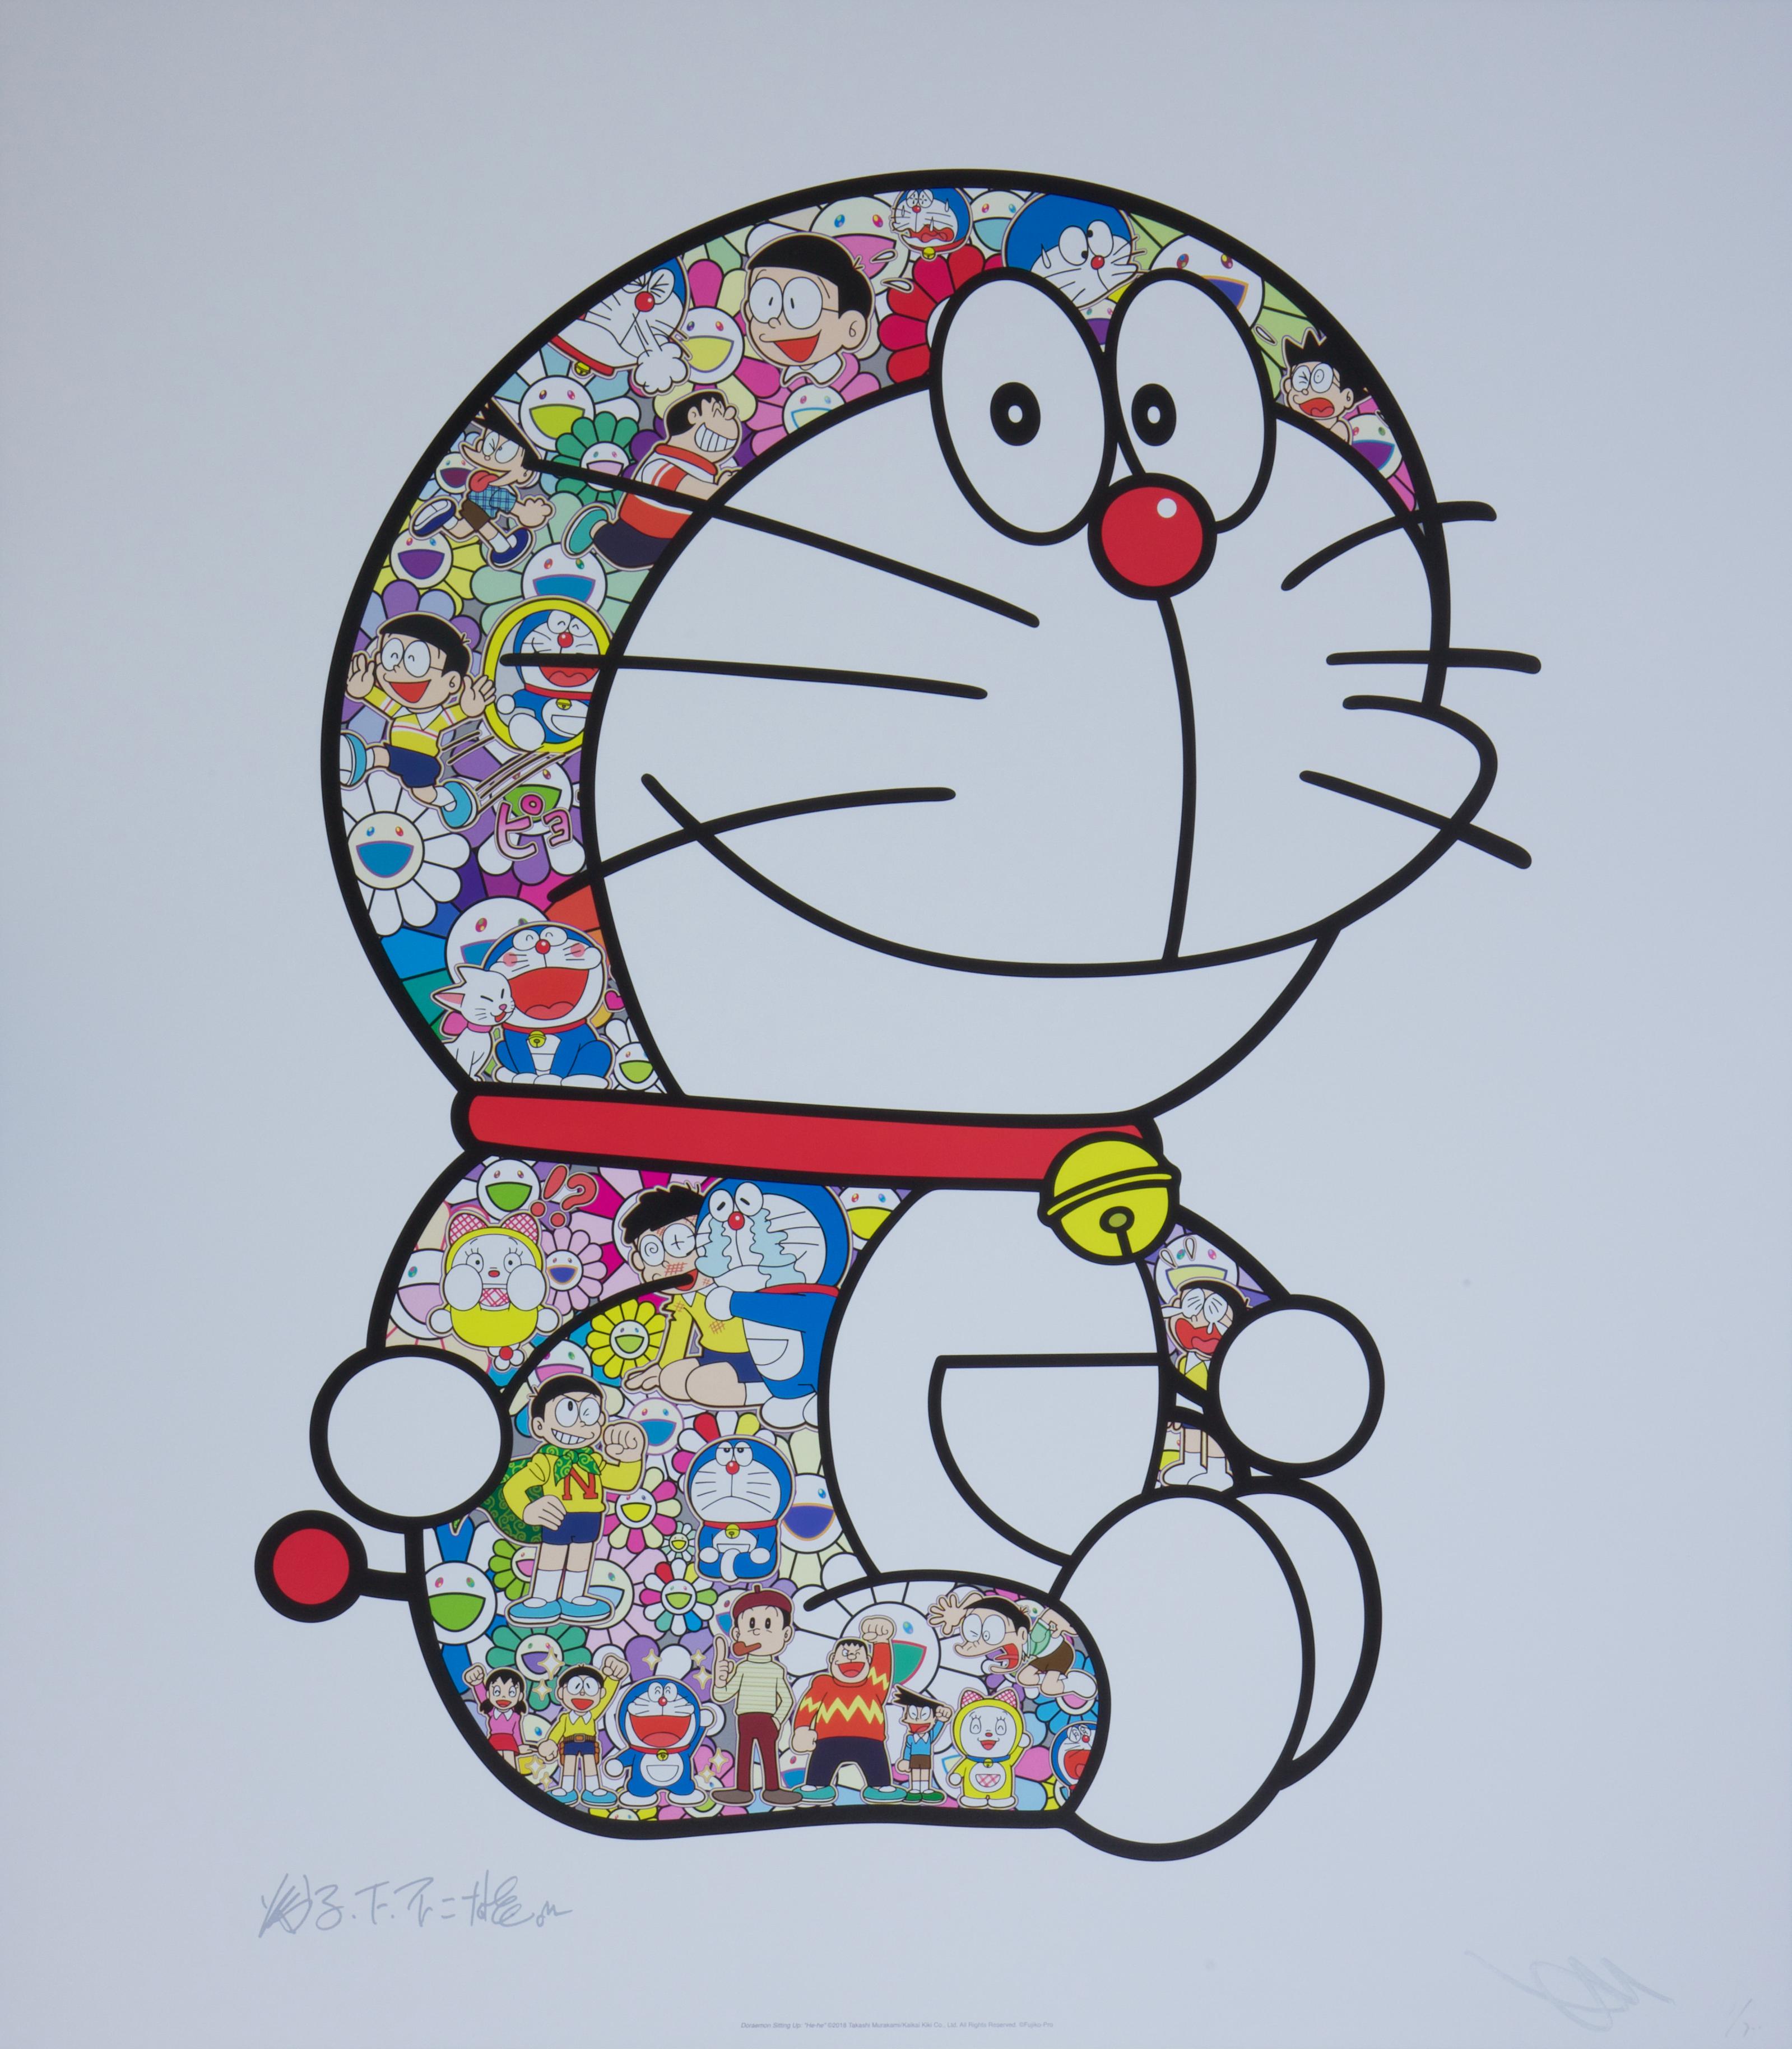 Doraemon Sitting Up: "He-he" - Print by Takashi Murakami